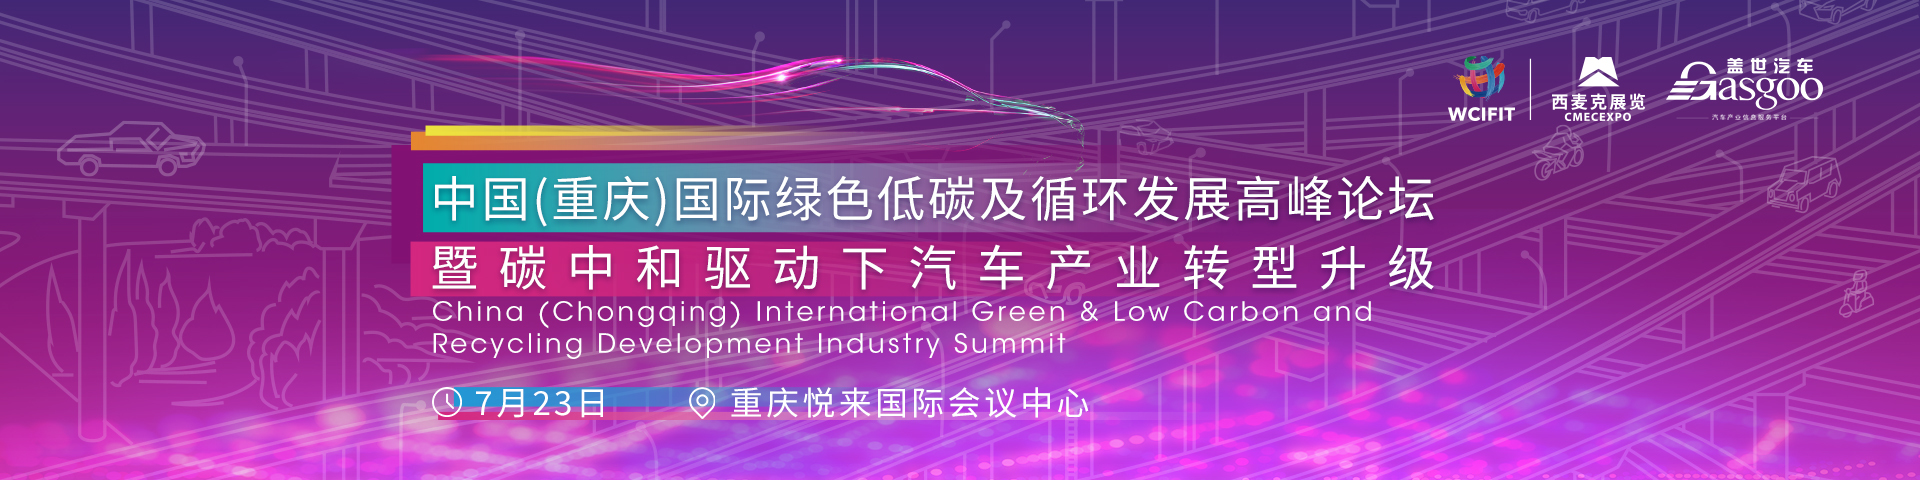 中国(重庆)国际绿色低碳及循环发展高峰论坛暨碳中和驱动下汽车产业转型升级China (Chongqing) International Green & Low Carbon and Recycling Development Industry Summit